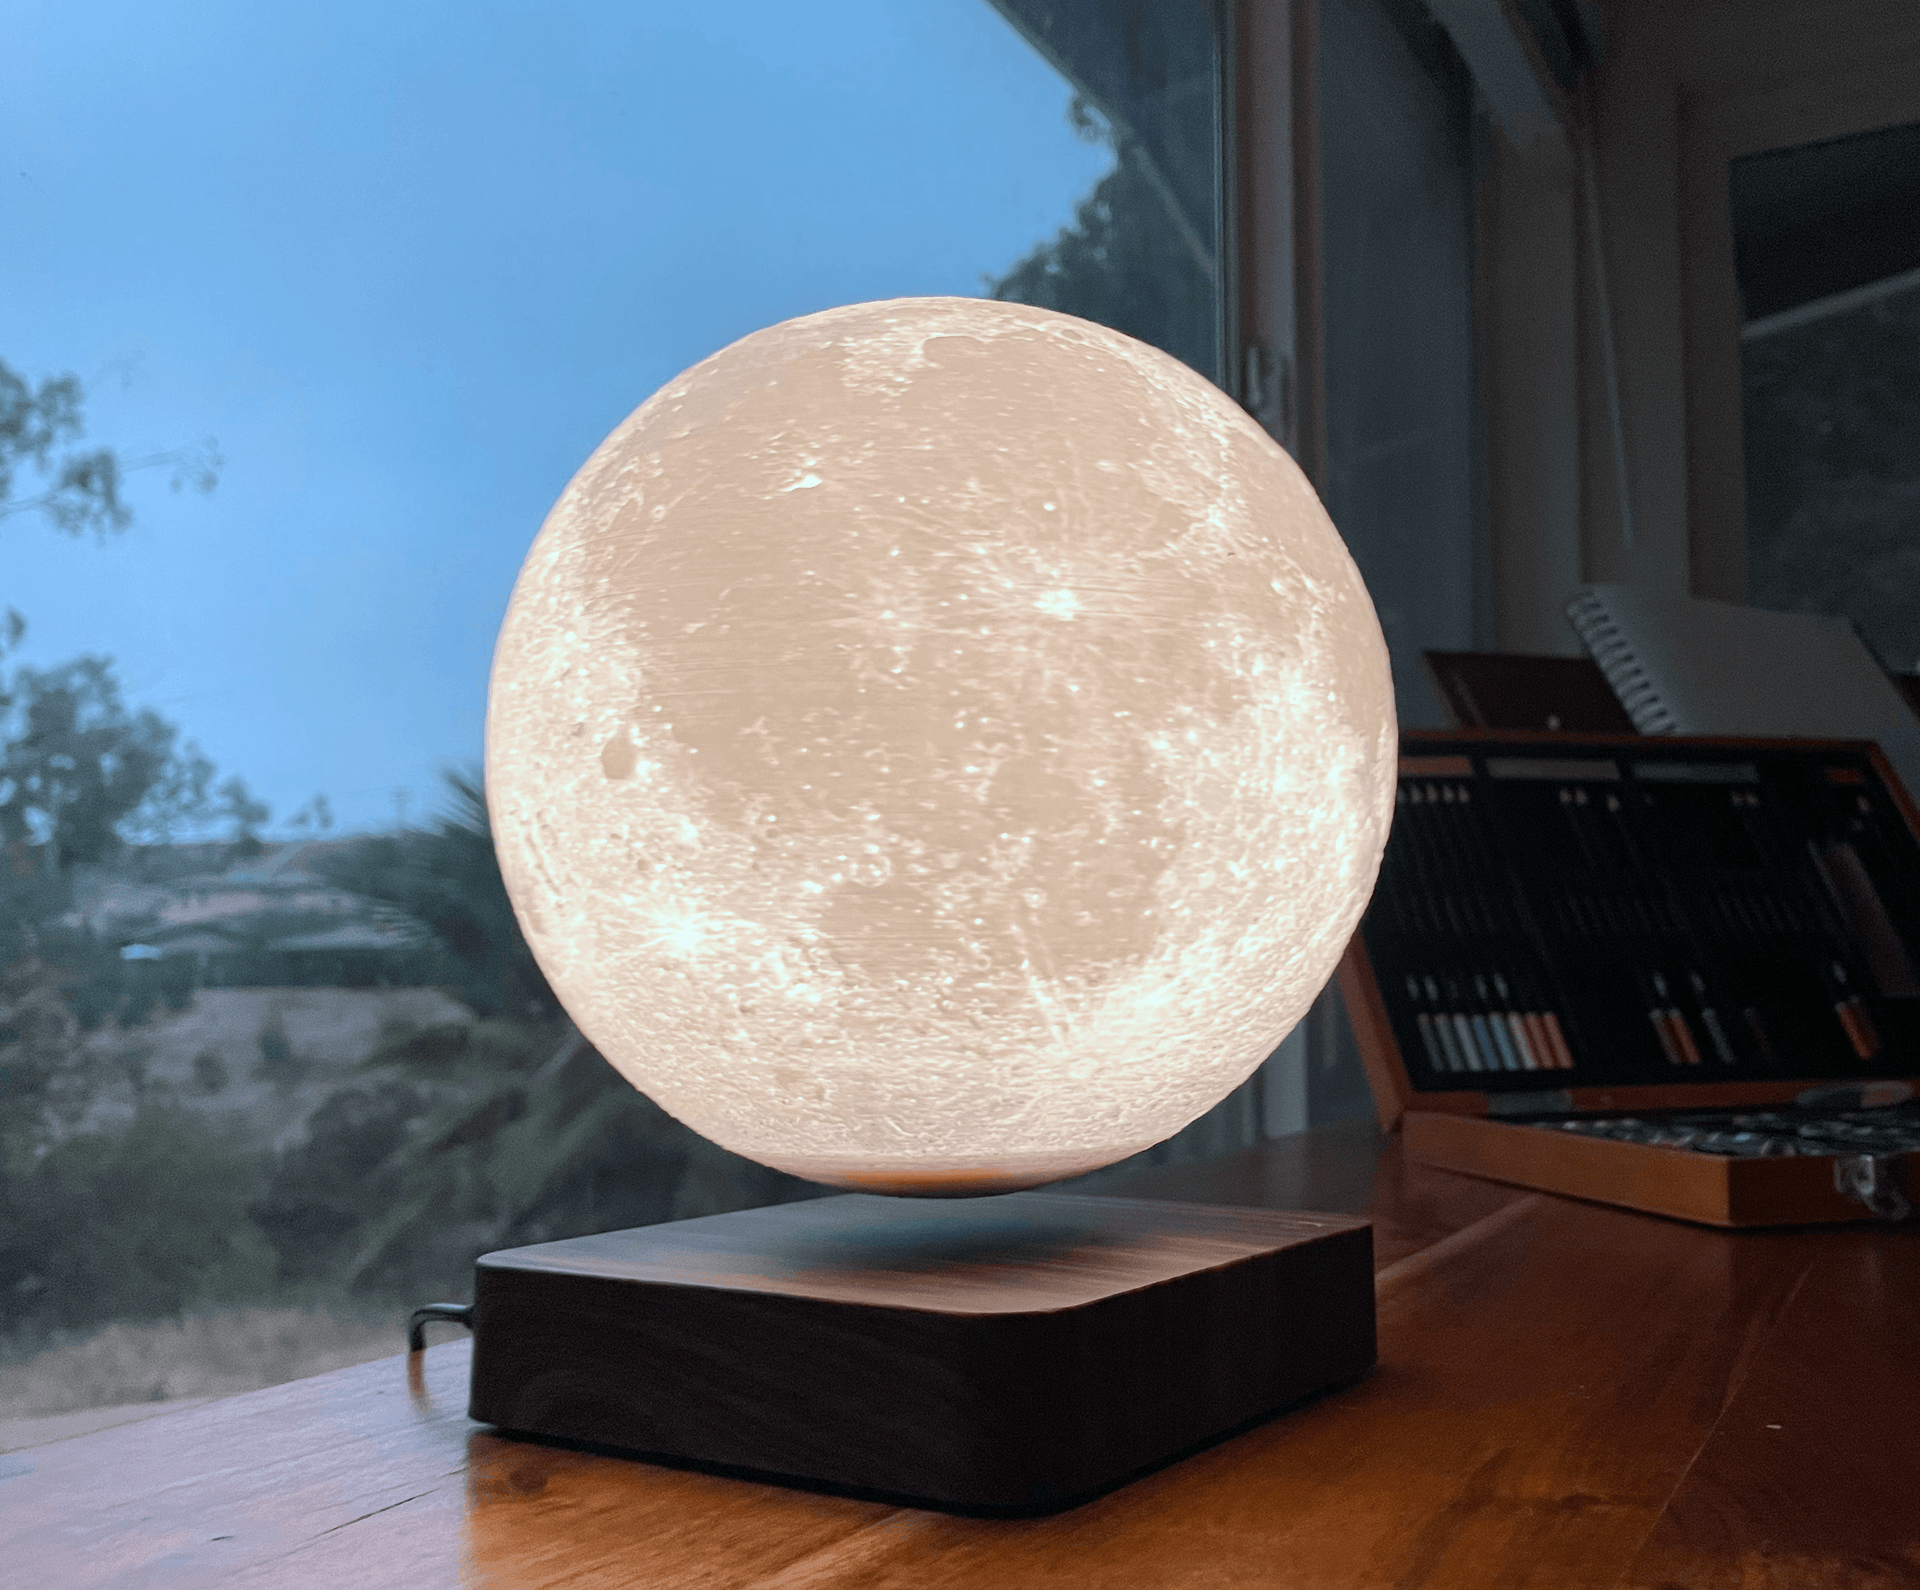 https://levitatingmoon.com/cdn/shop/files/the-levitating-moontm-lamp-7-inch-18cm-levitating-moon-1.png?v=1688331473&width=1920